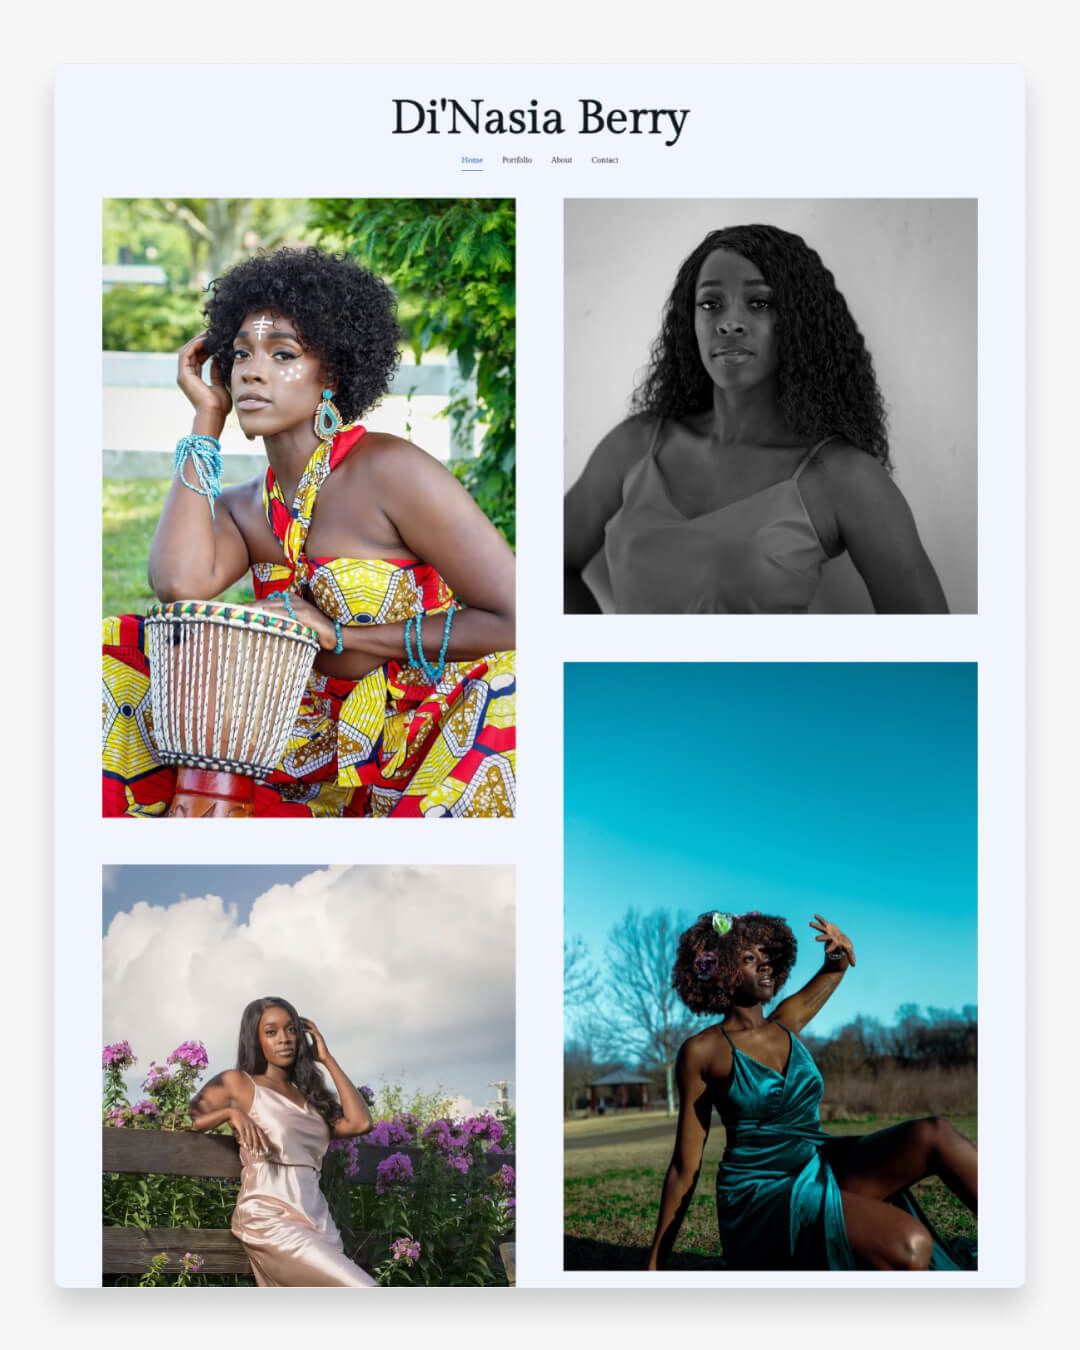 Sitio web del portafolio de modelos de Di'Nasia Berry